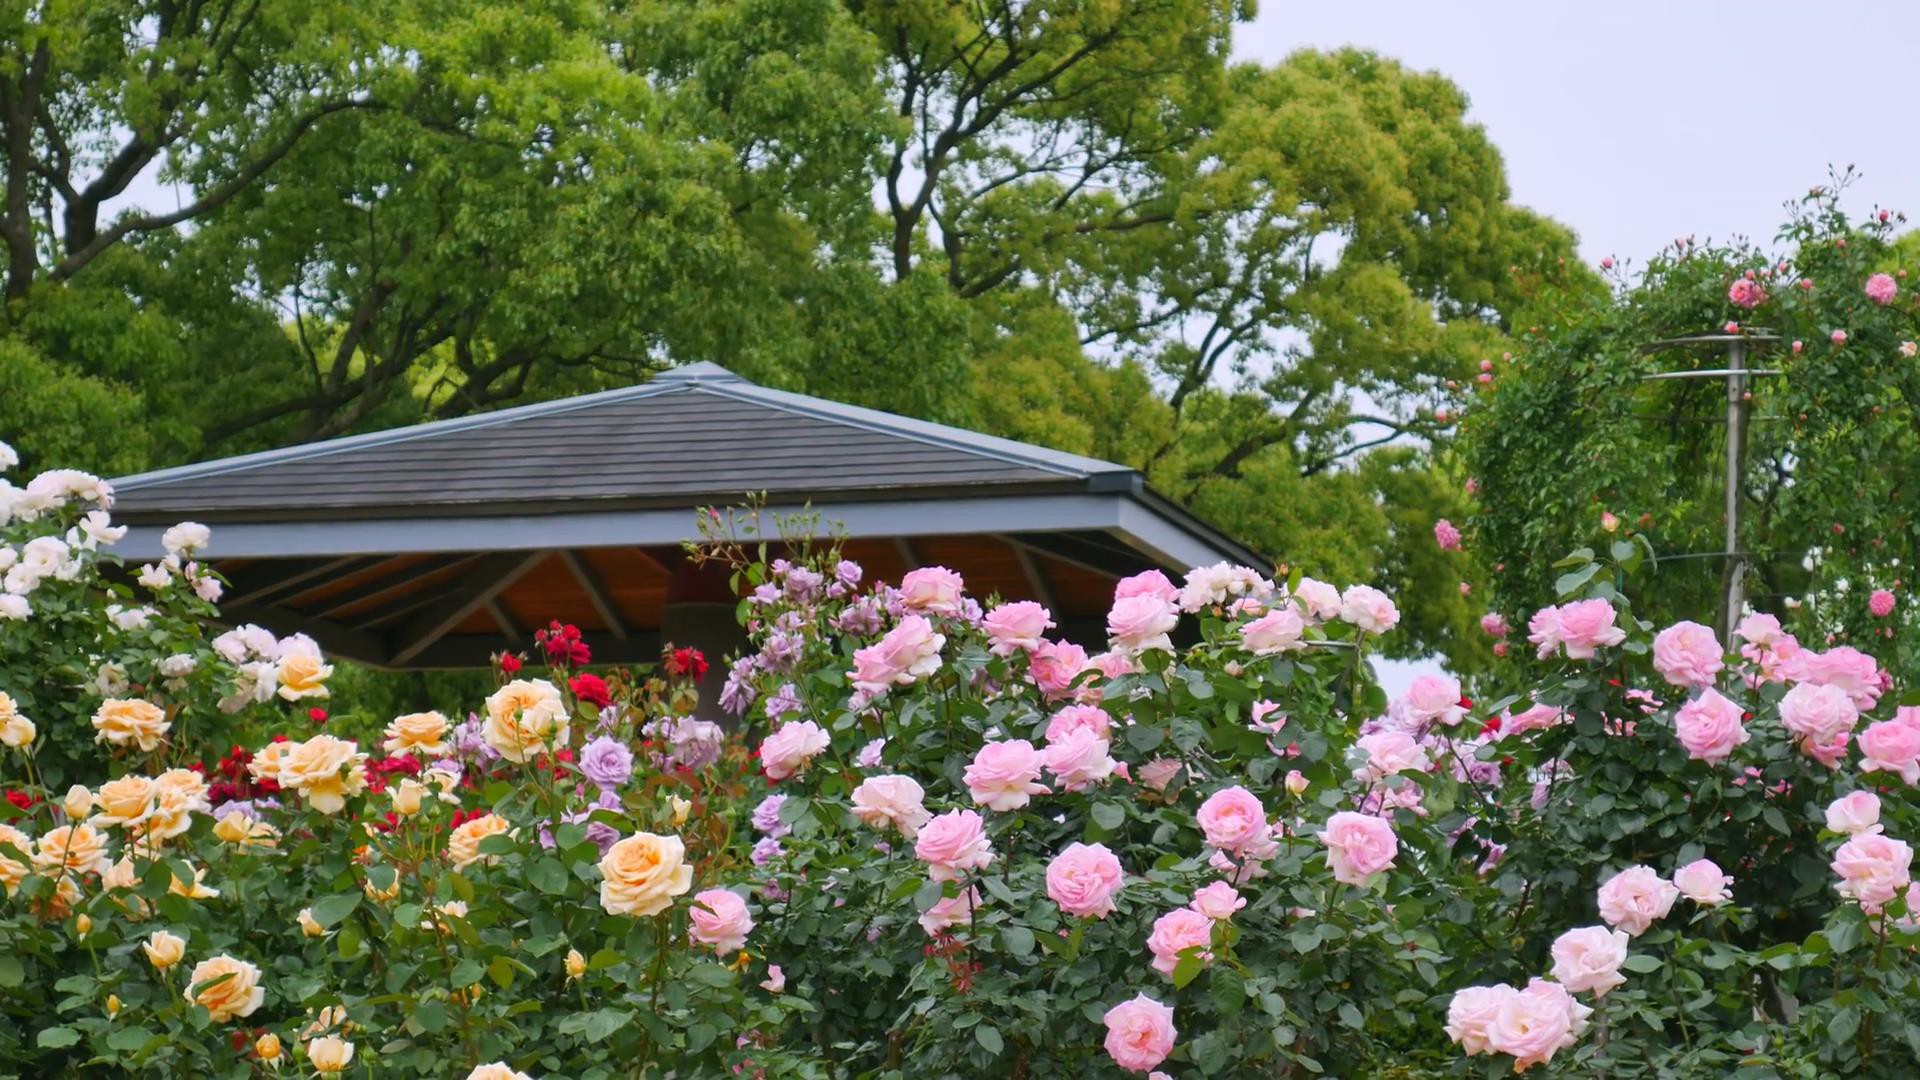 Đến thăm khu vườn trên đảo ở Nhật Bản với 2.600 cây hoa hồng rung rinh trước gió đẹp mê mẩn lòng người - Ảnh 18.